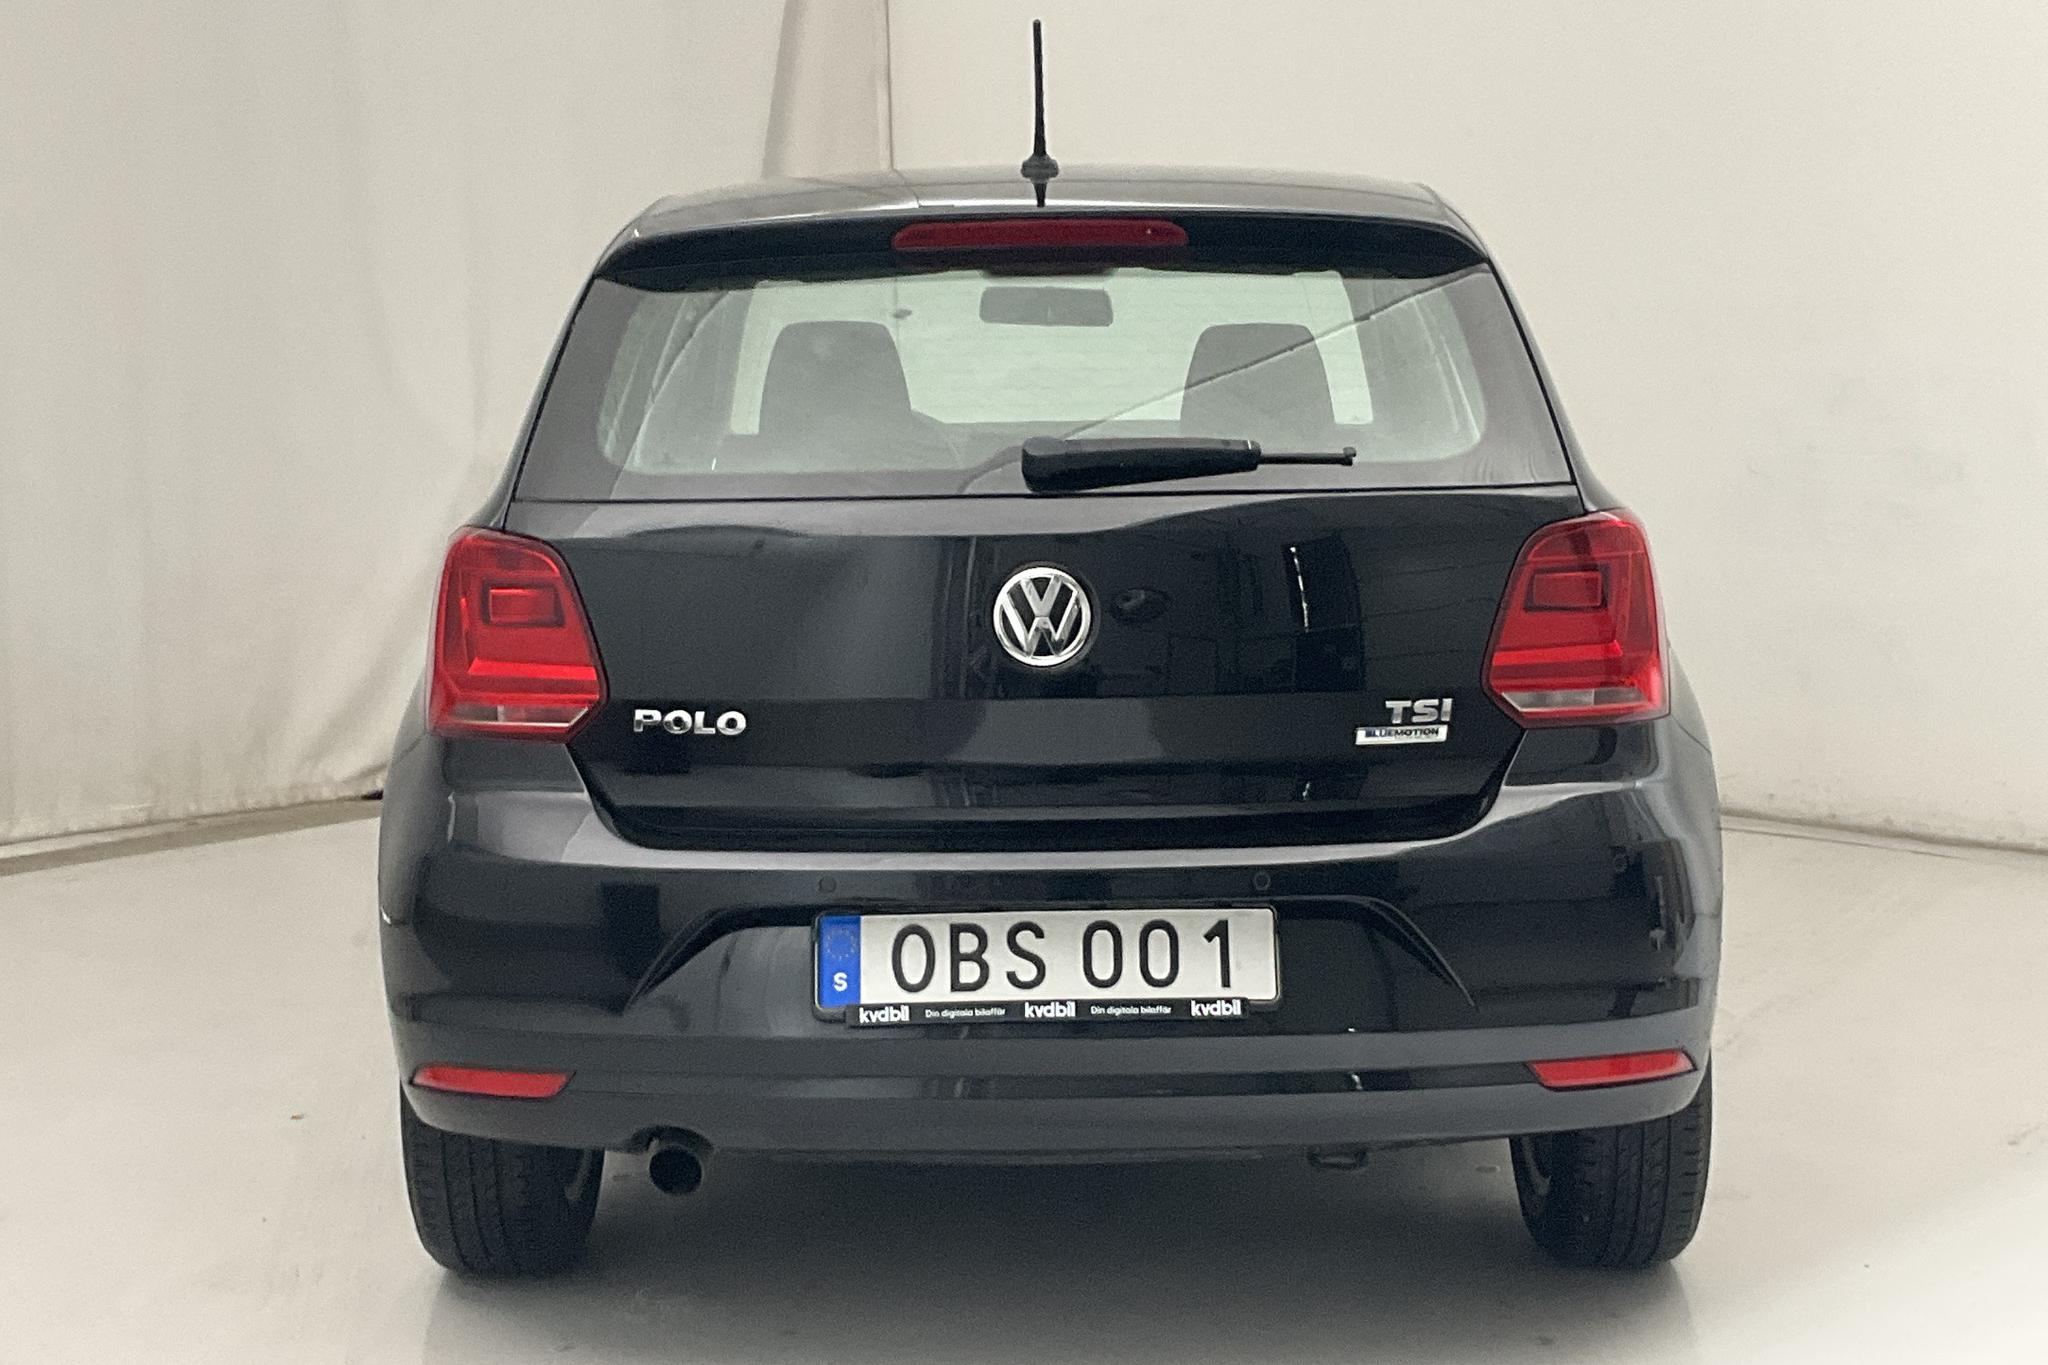 VW Polo 1.2 TSI 5dr (90hk) - 7 304 mil - Automat - svart - 2016